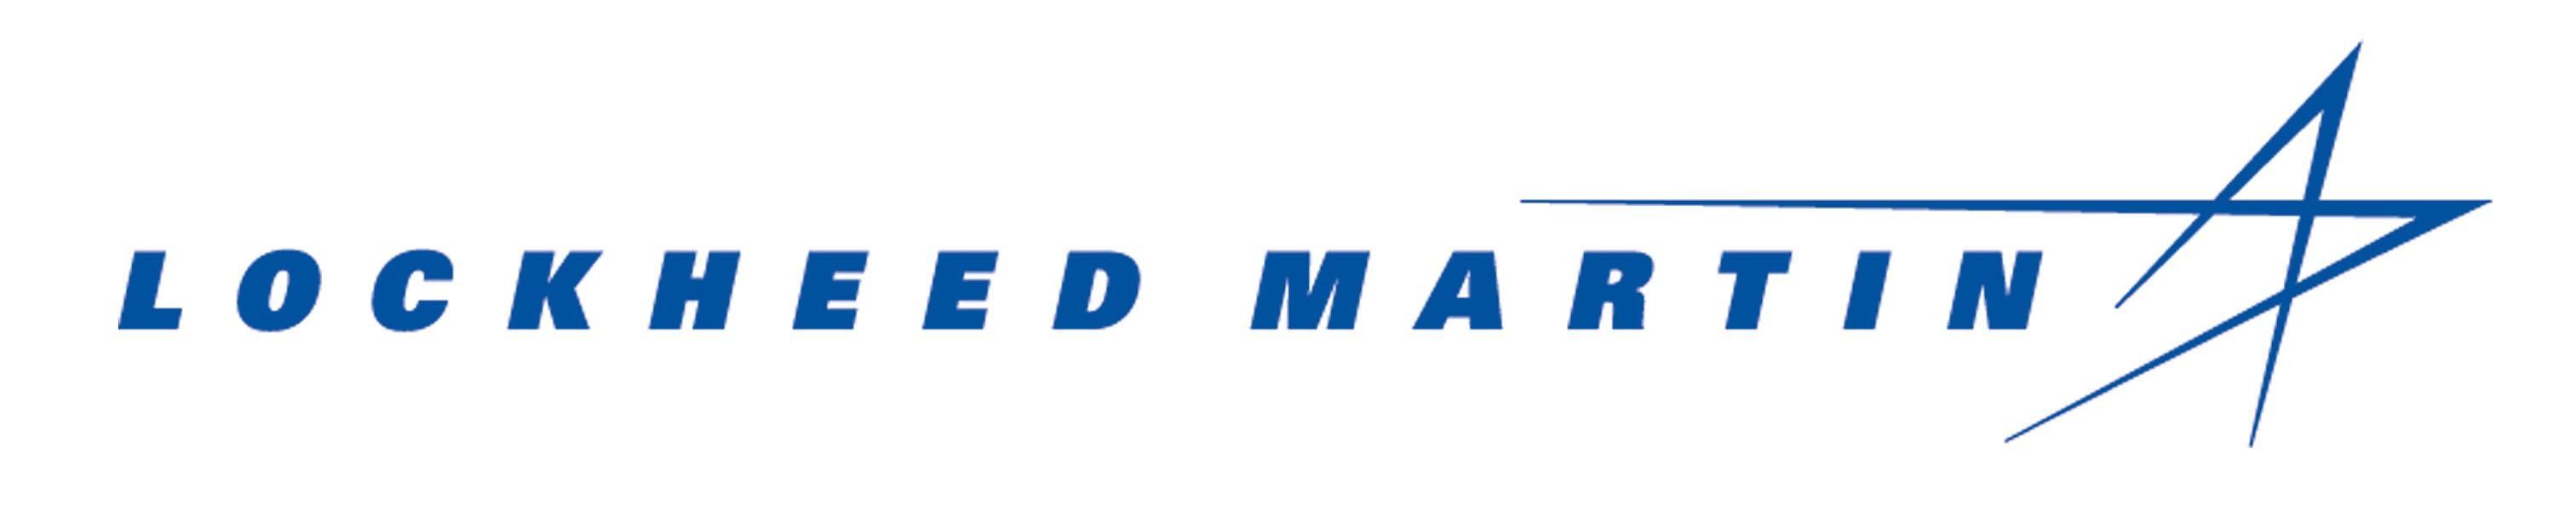 Lockheed Martin Star Logo - Lockheed Martin 2017-18 JA Bowl-A-Thon